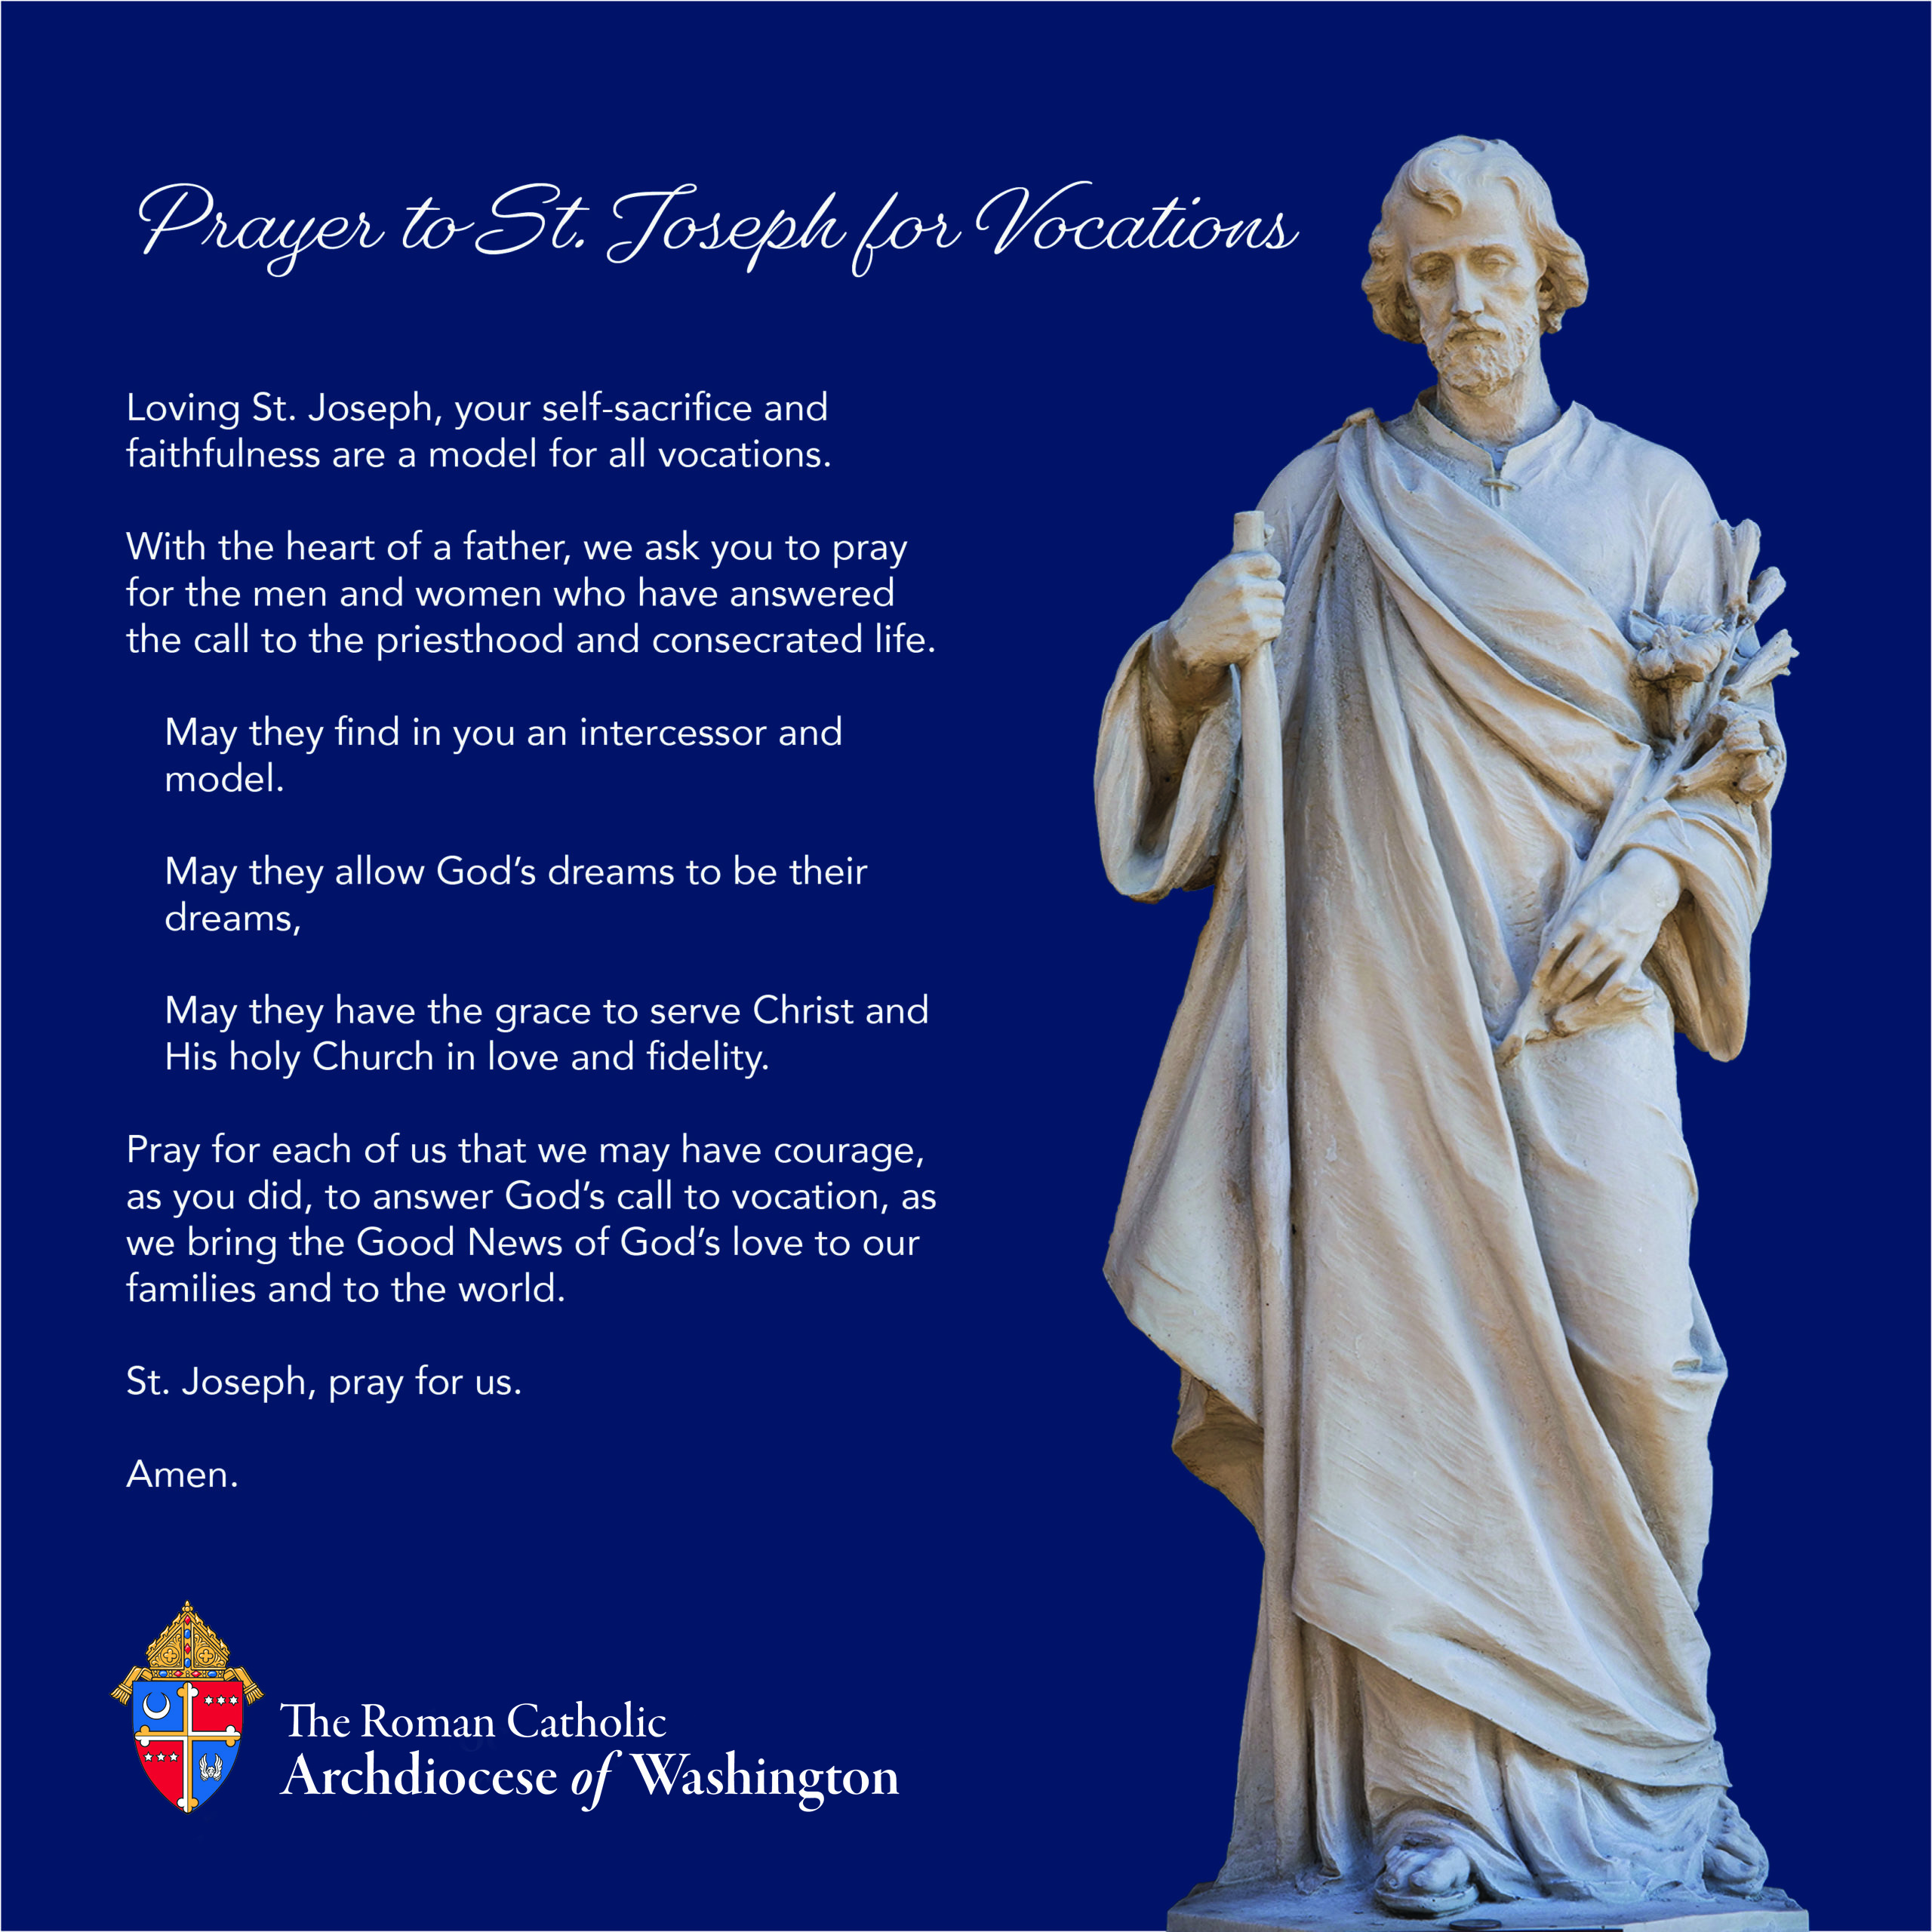 St. Joseph prayer for vocations